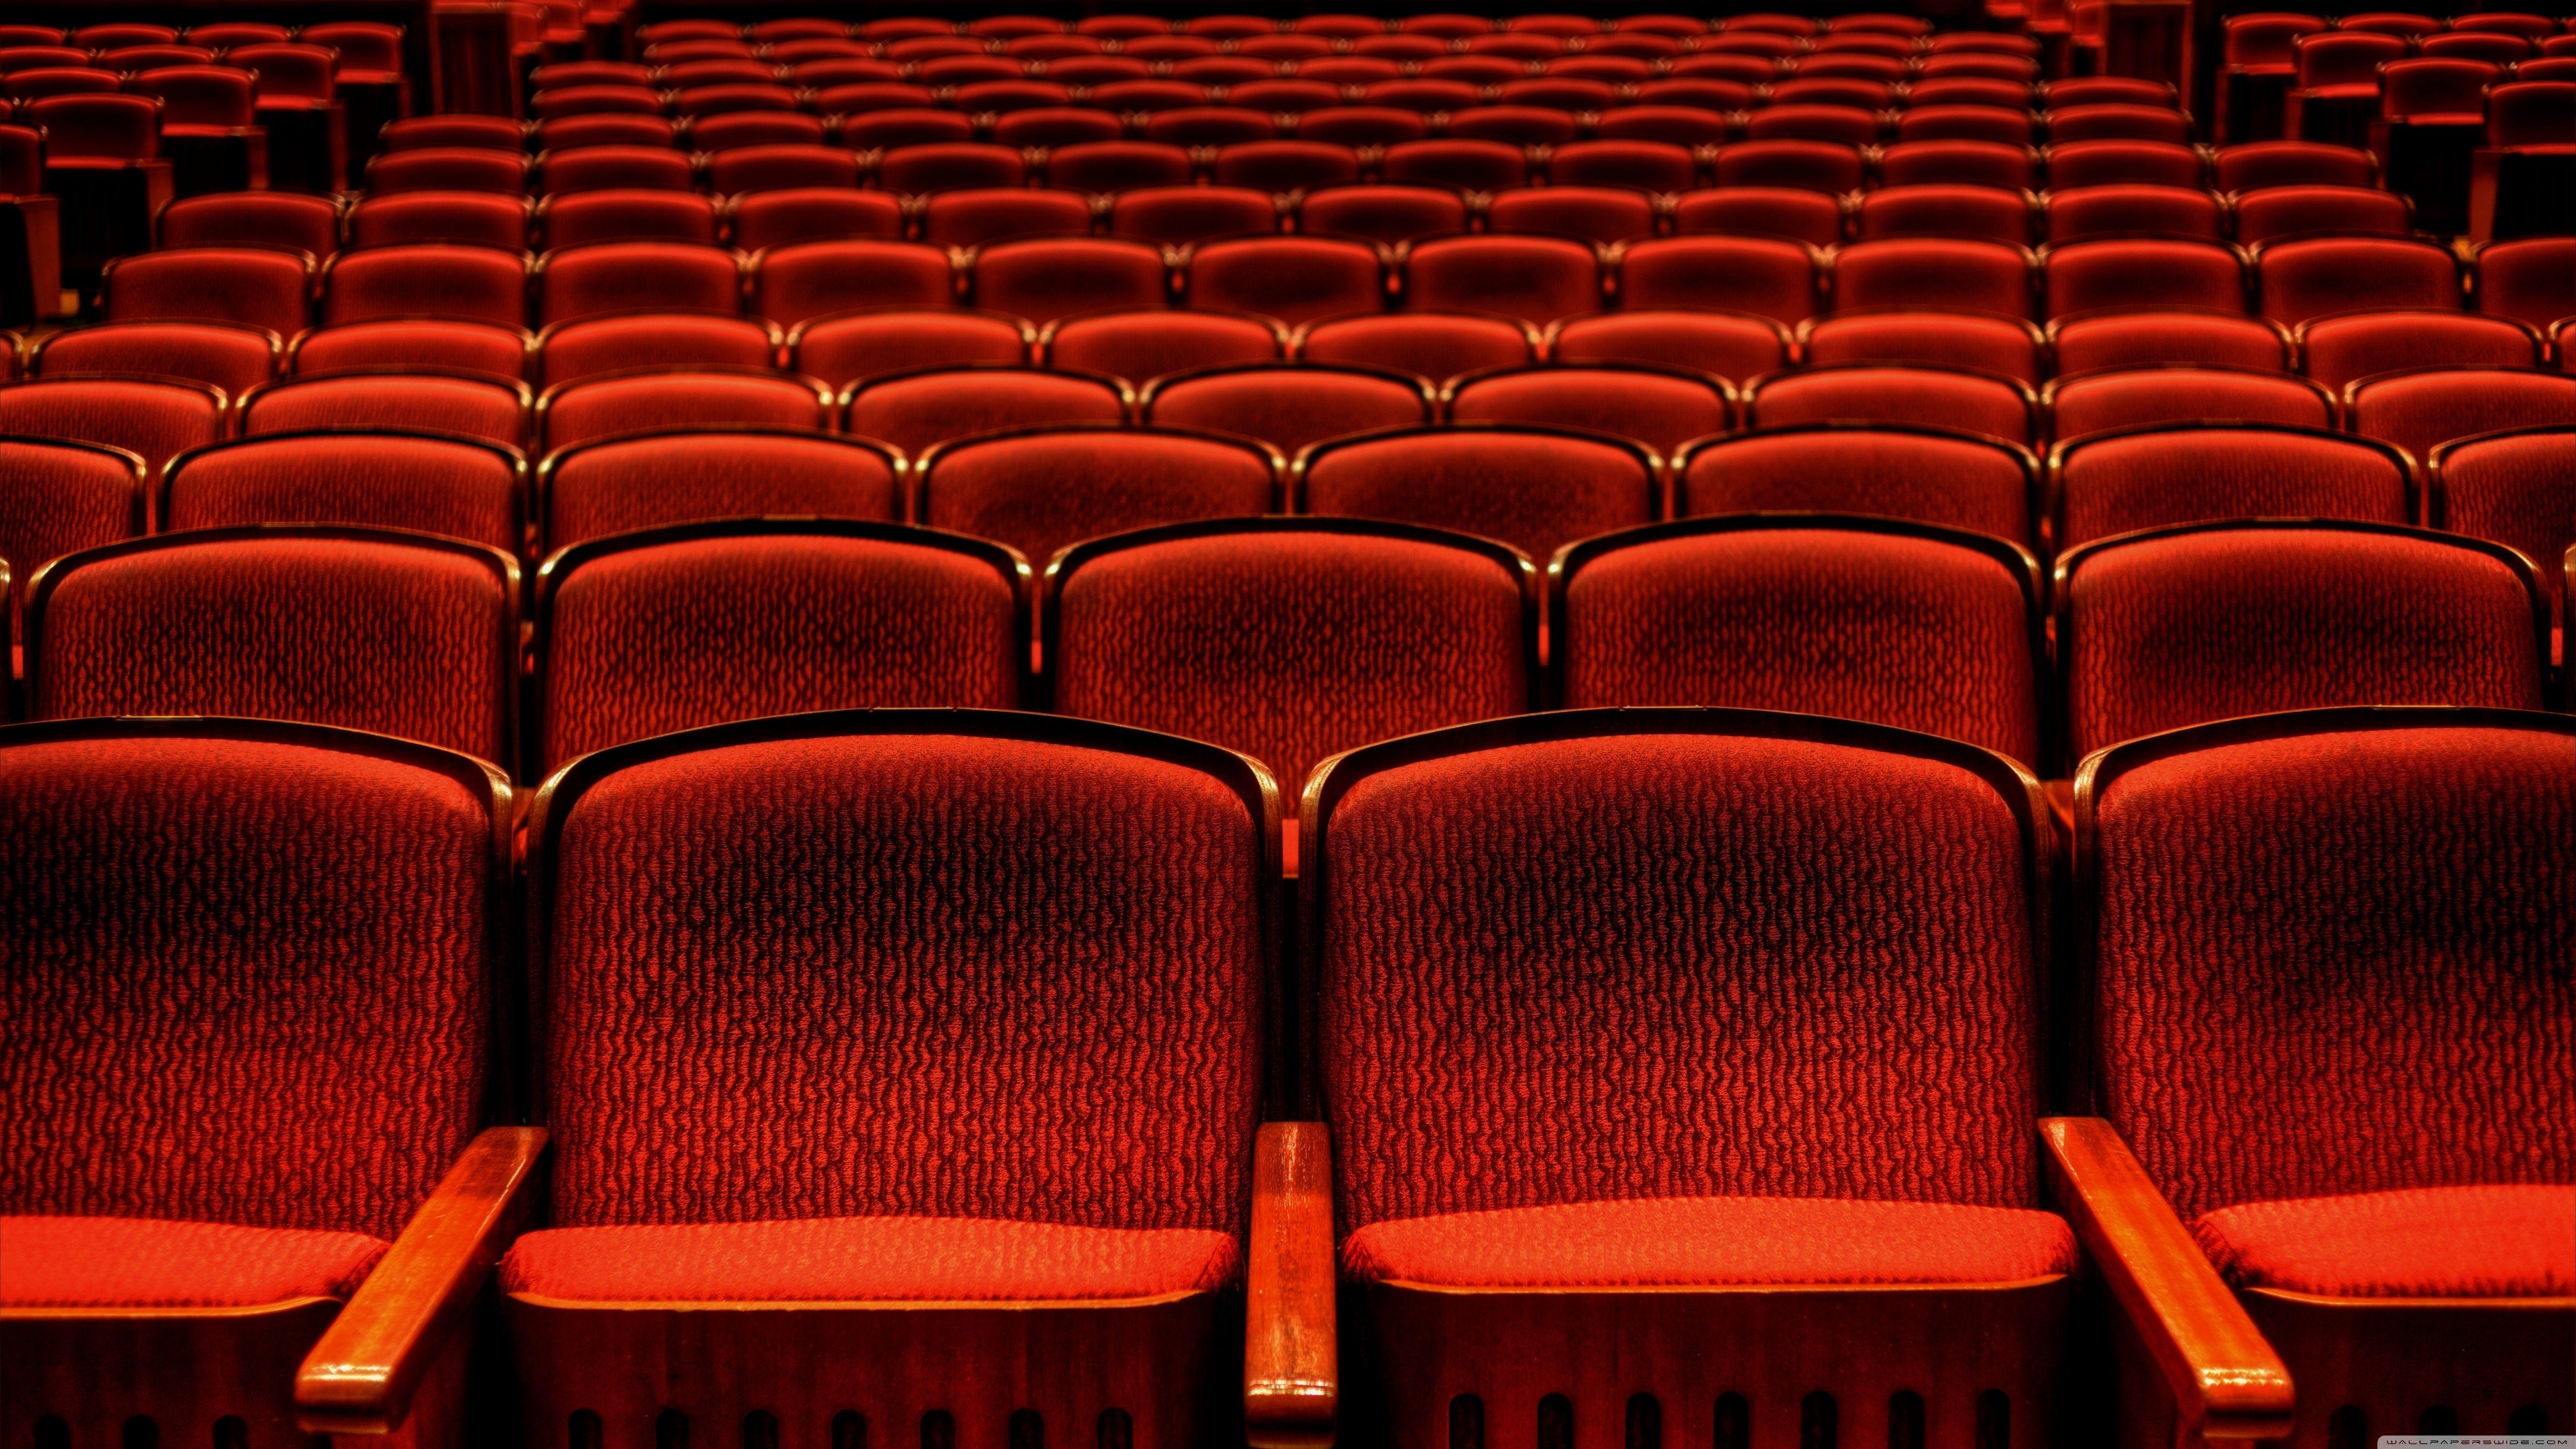 عکس اچ دی صندلی های چیده شده قرمز رنگ سالن تئاتر